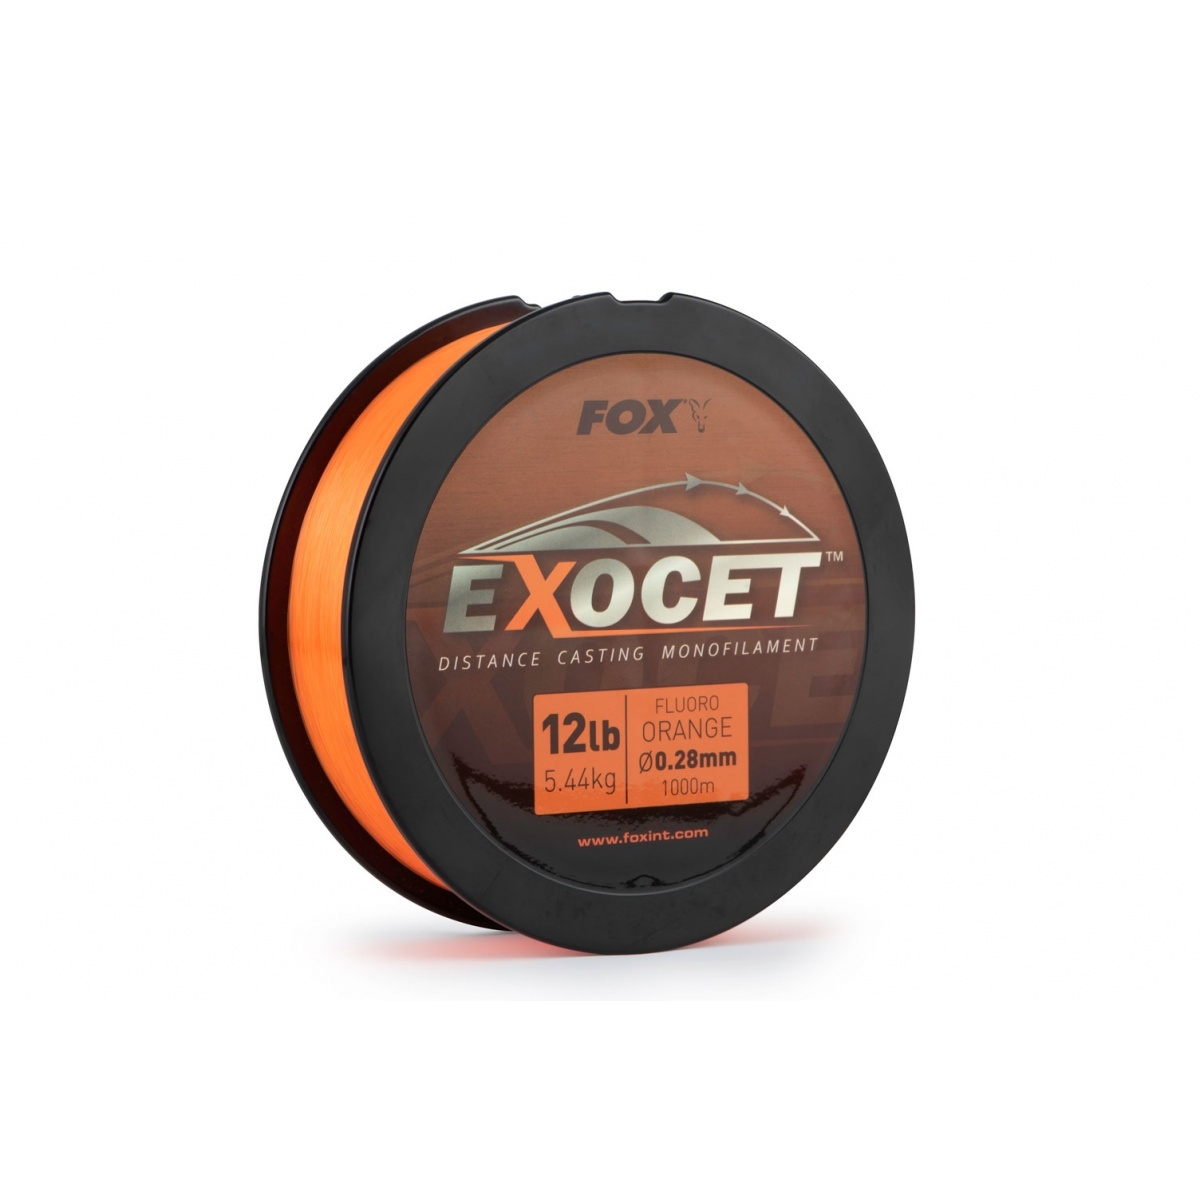 20125-fox-exocet-fluoro-orange-mono-0-26-mm-srednica-rockworld-sklep-dla-karpiarzy